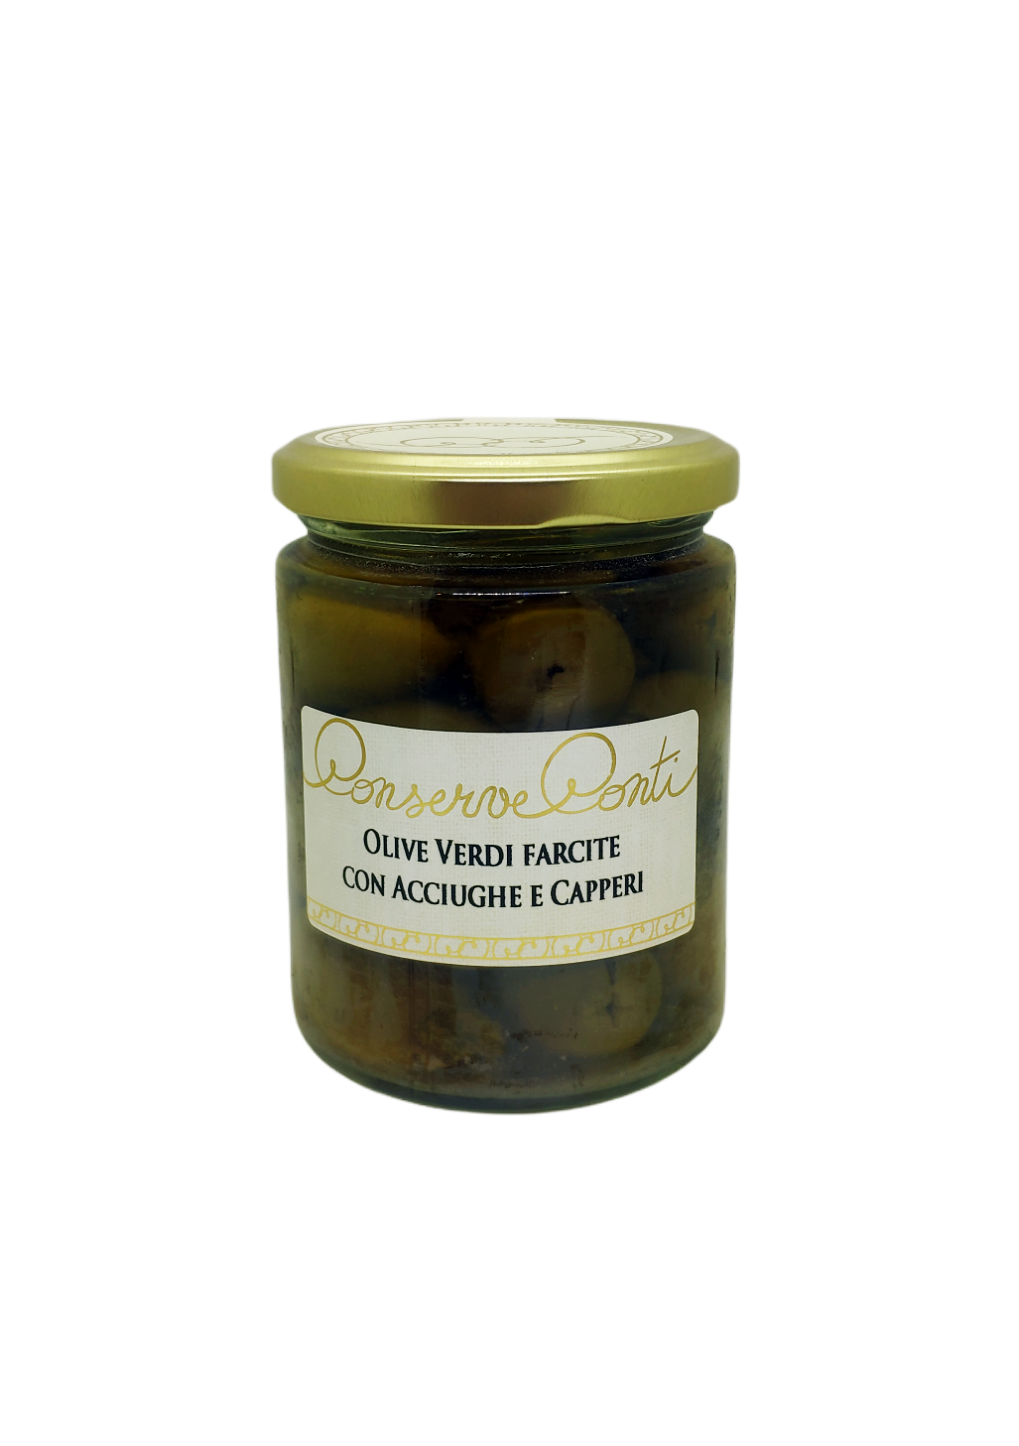 Olive verdi farcite con acciughe e capperi - Conserve Conti